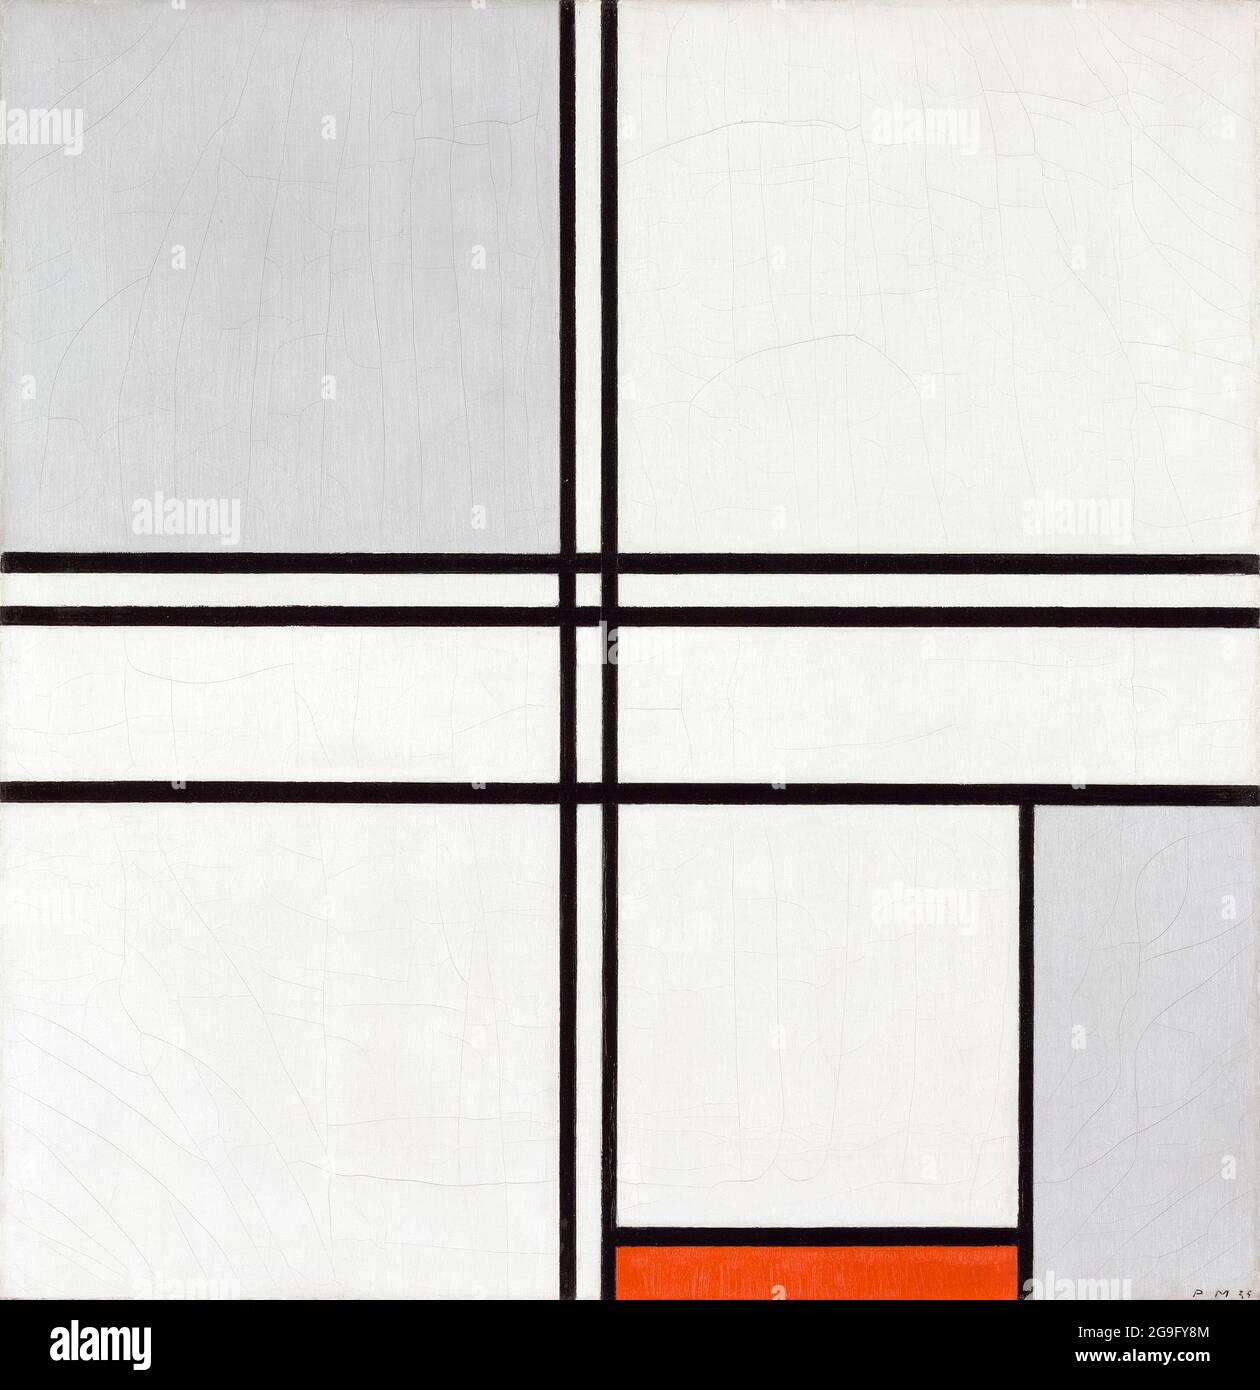 Zusammensetzung (Nr. 1) Grau-Rot, abstraktes Gemälde von Piet Mondrian (Piet Mondriaan), 1935 Stockfoto